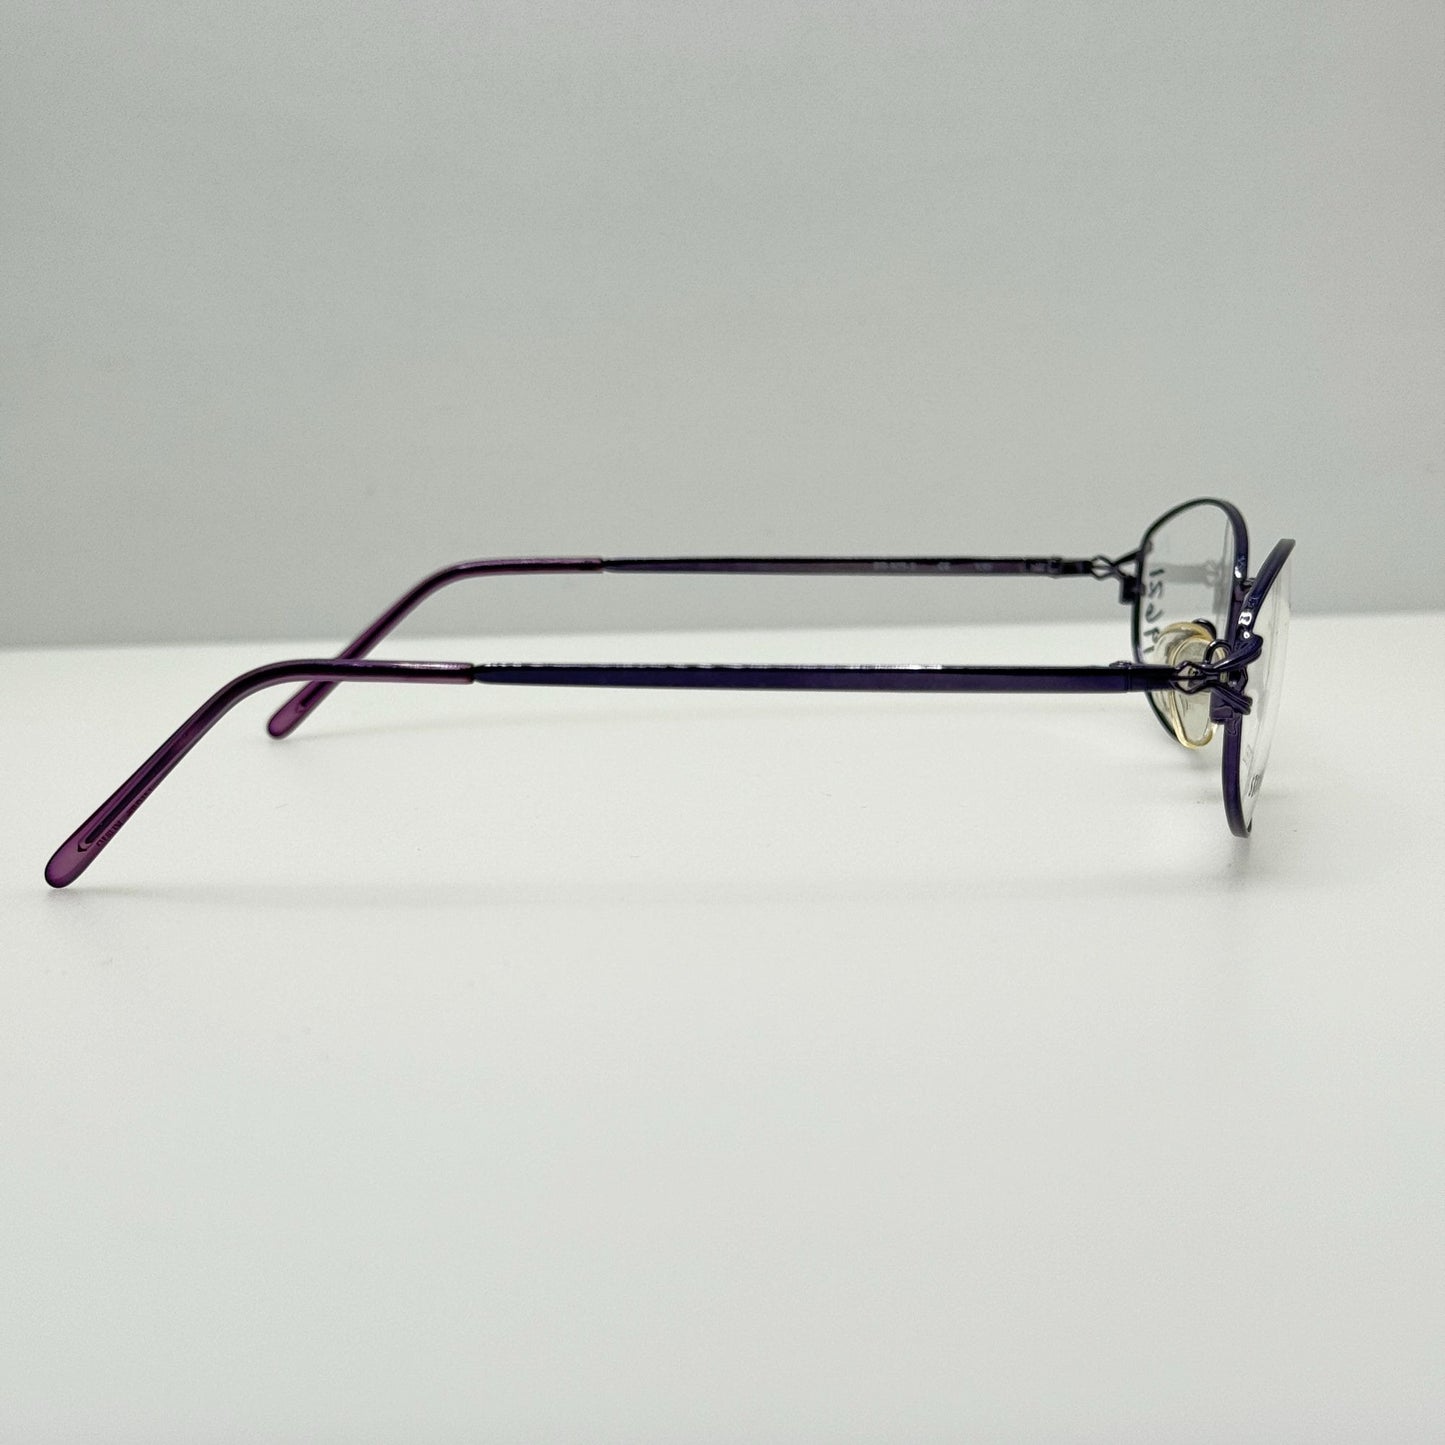 Bill Blass Eyeglasses Eye Glasses Frames BB 925 3 54-18-130